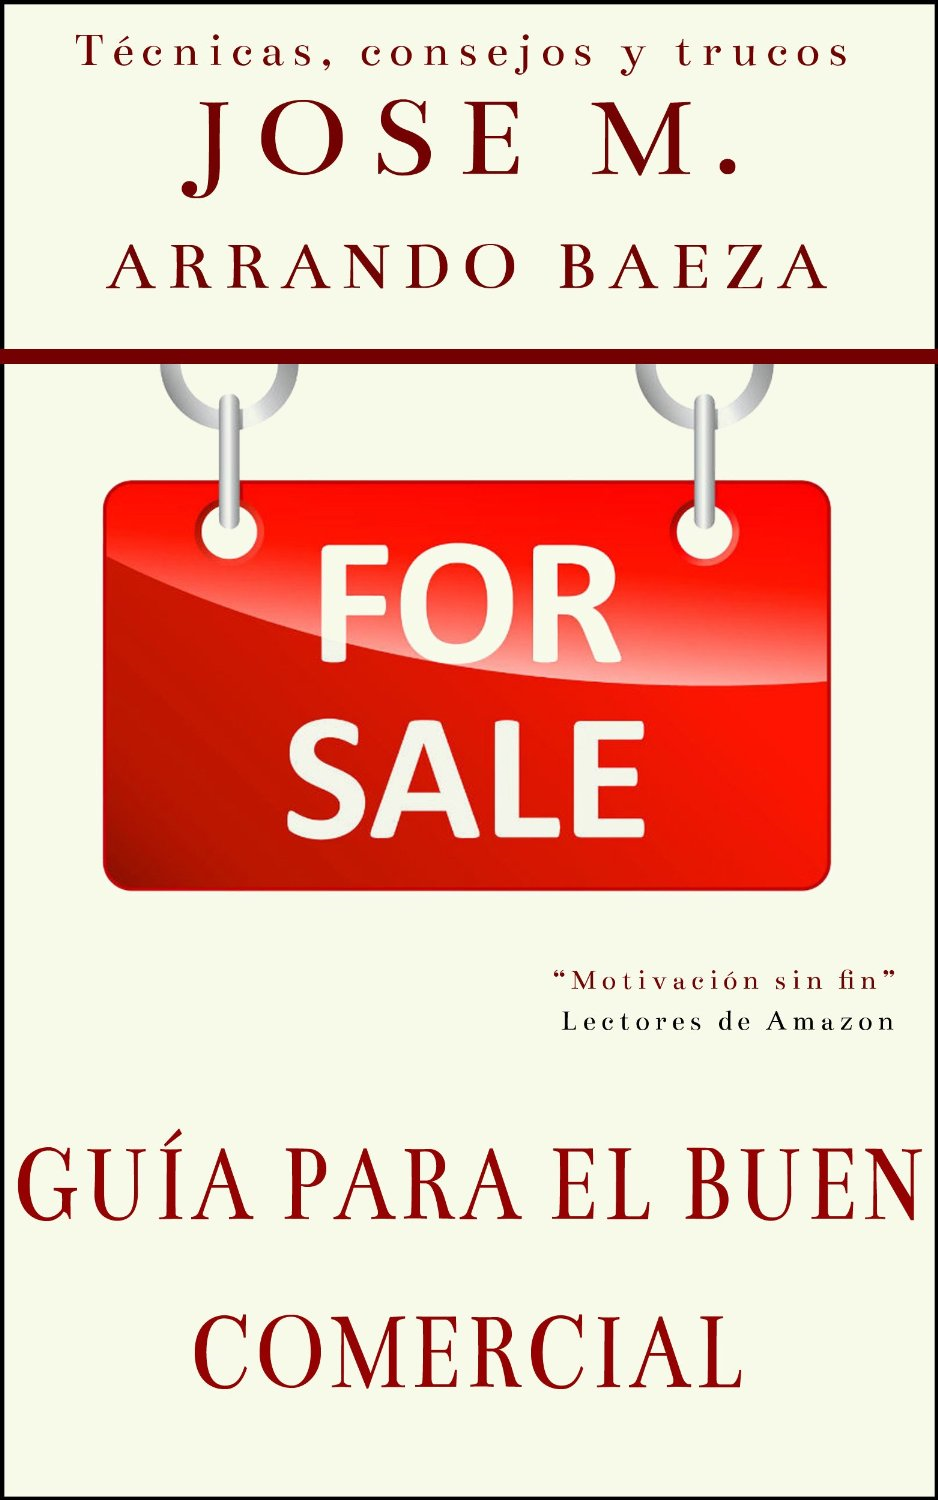 Libro de ventas de Jose M Arrando